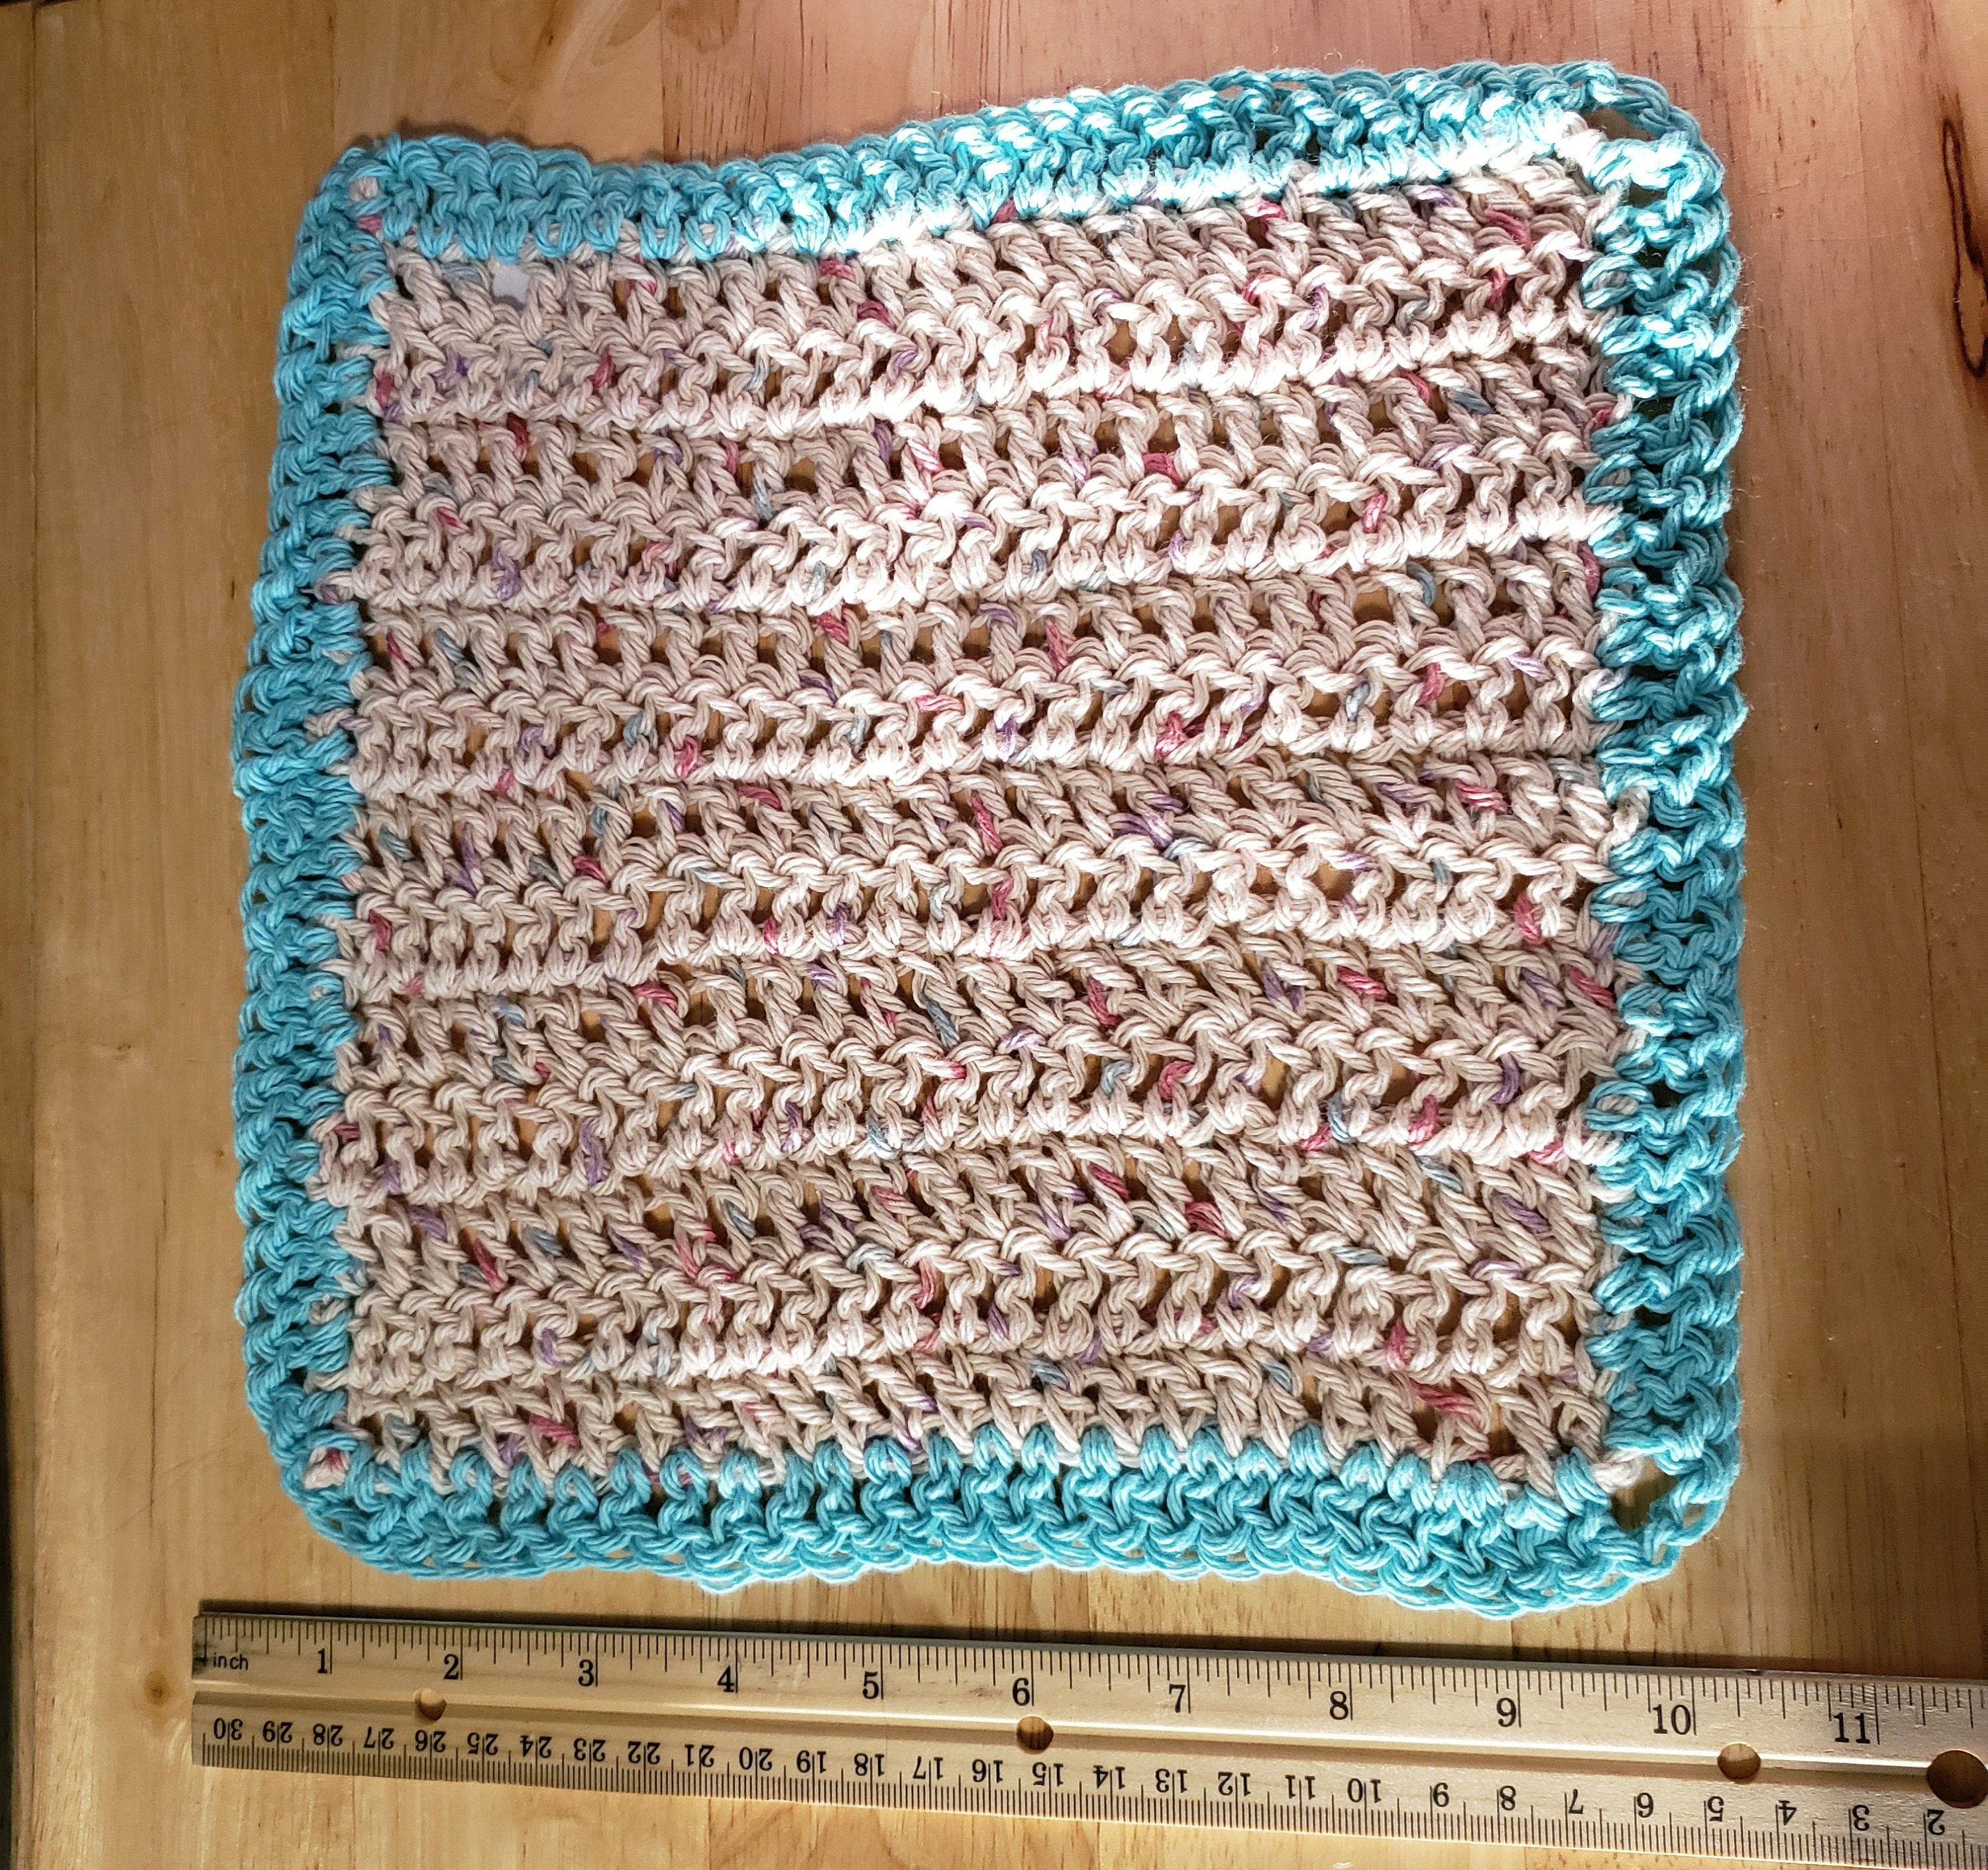 Yarn for rags/wash cloths : r/askcrochet